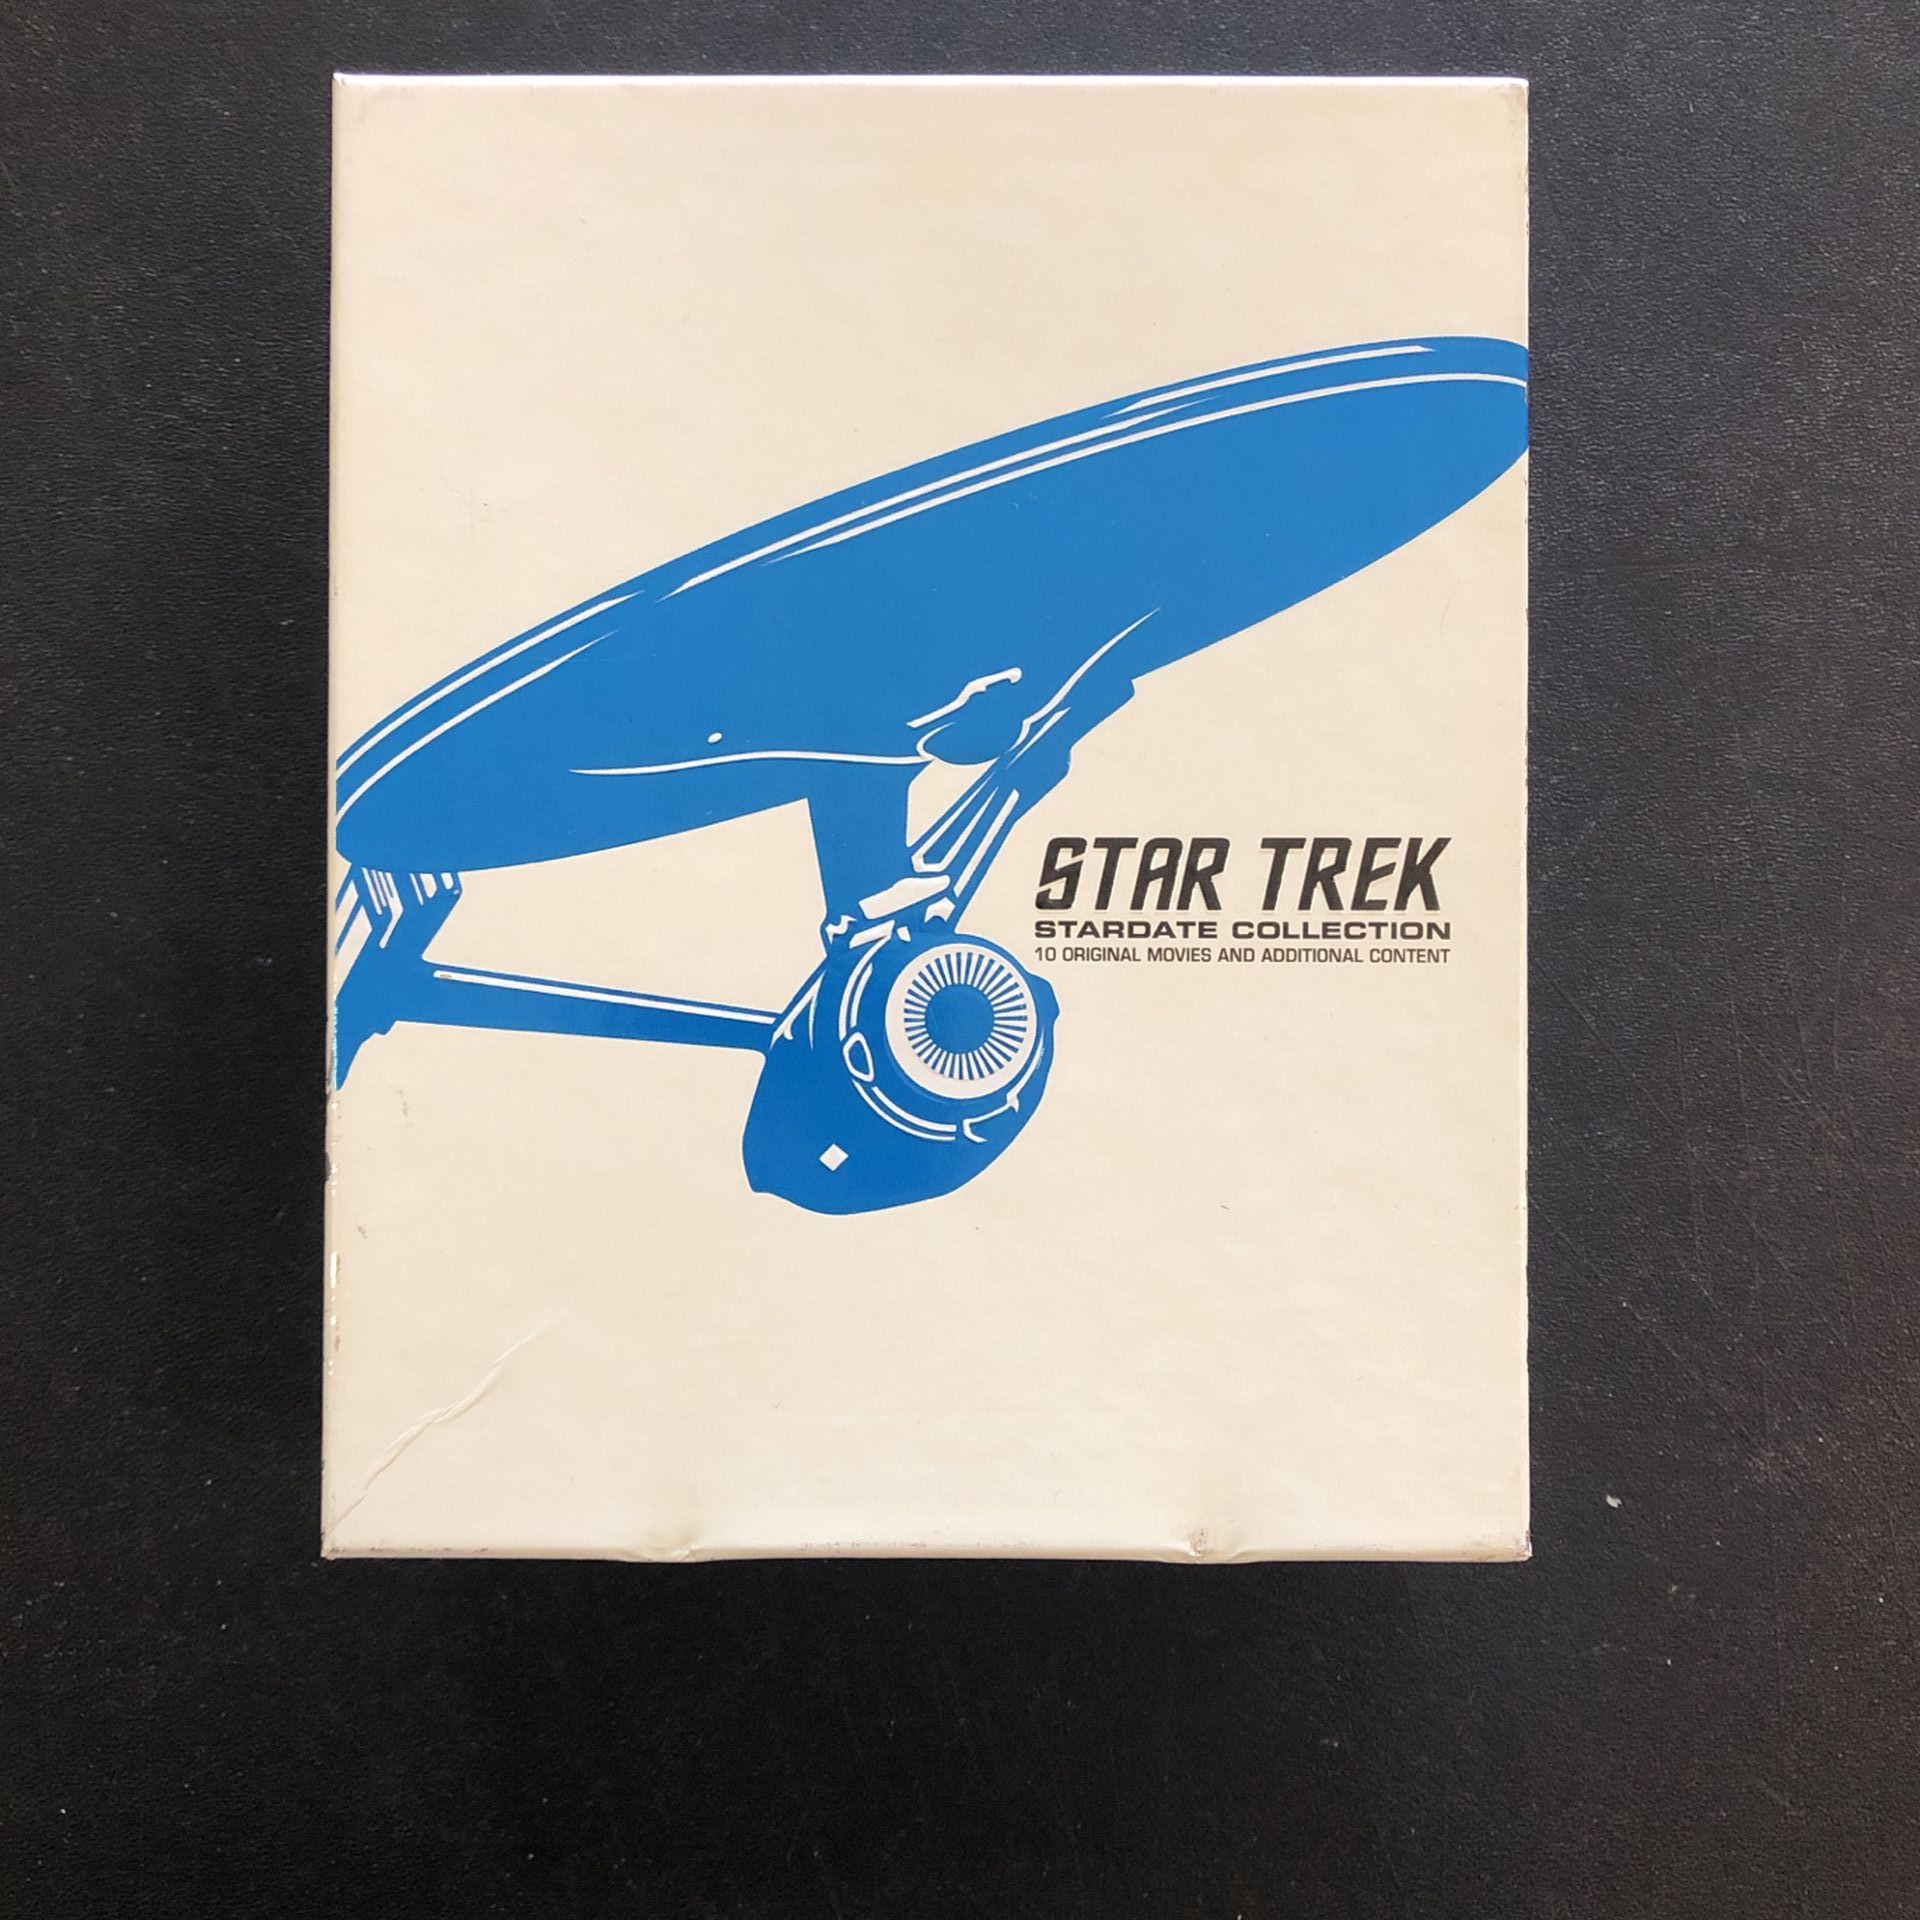 STAR TREK: STARDATE COLLECTION (BLUERAY)